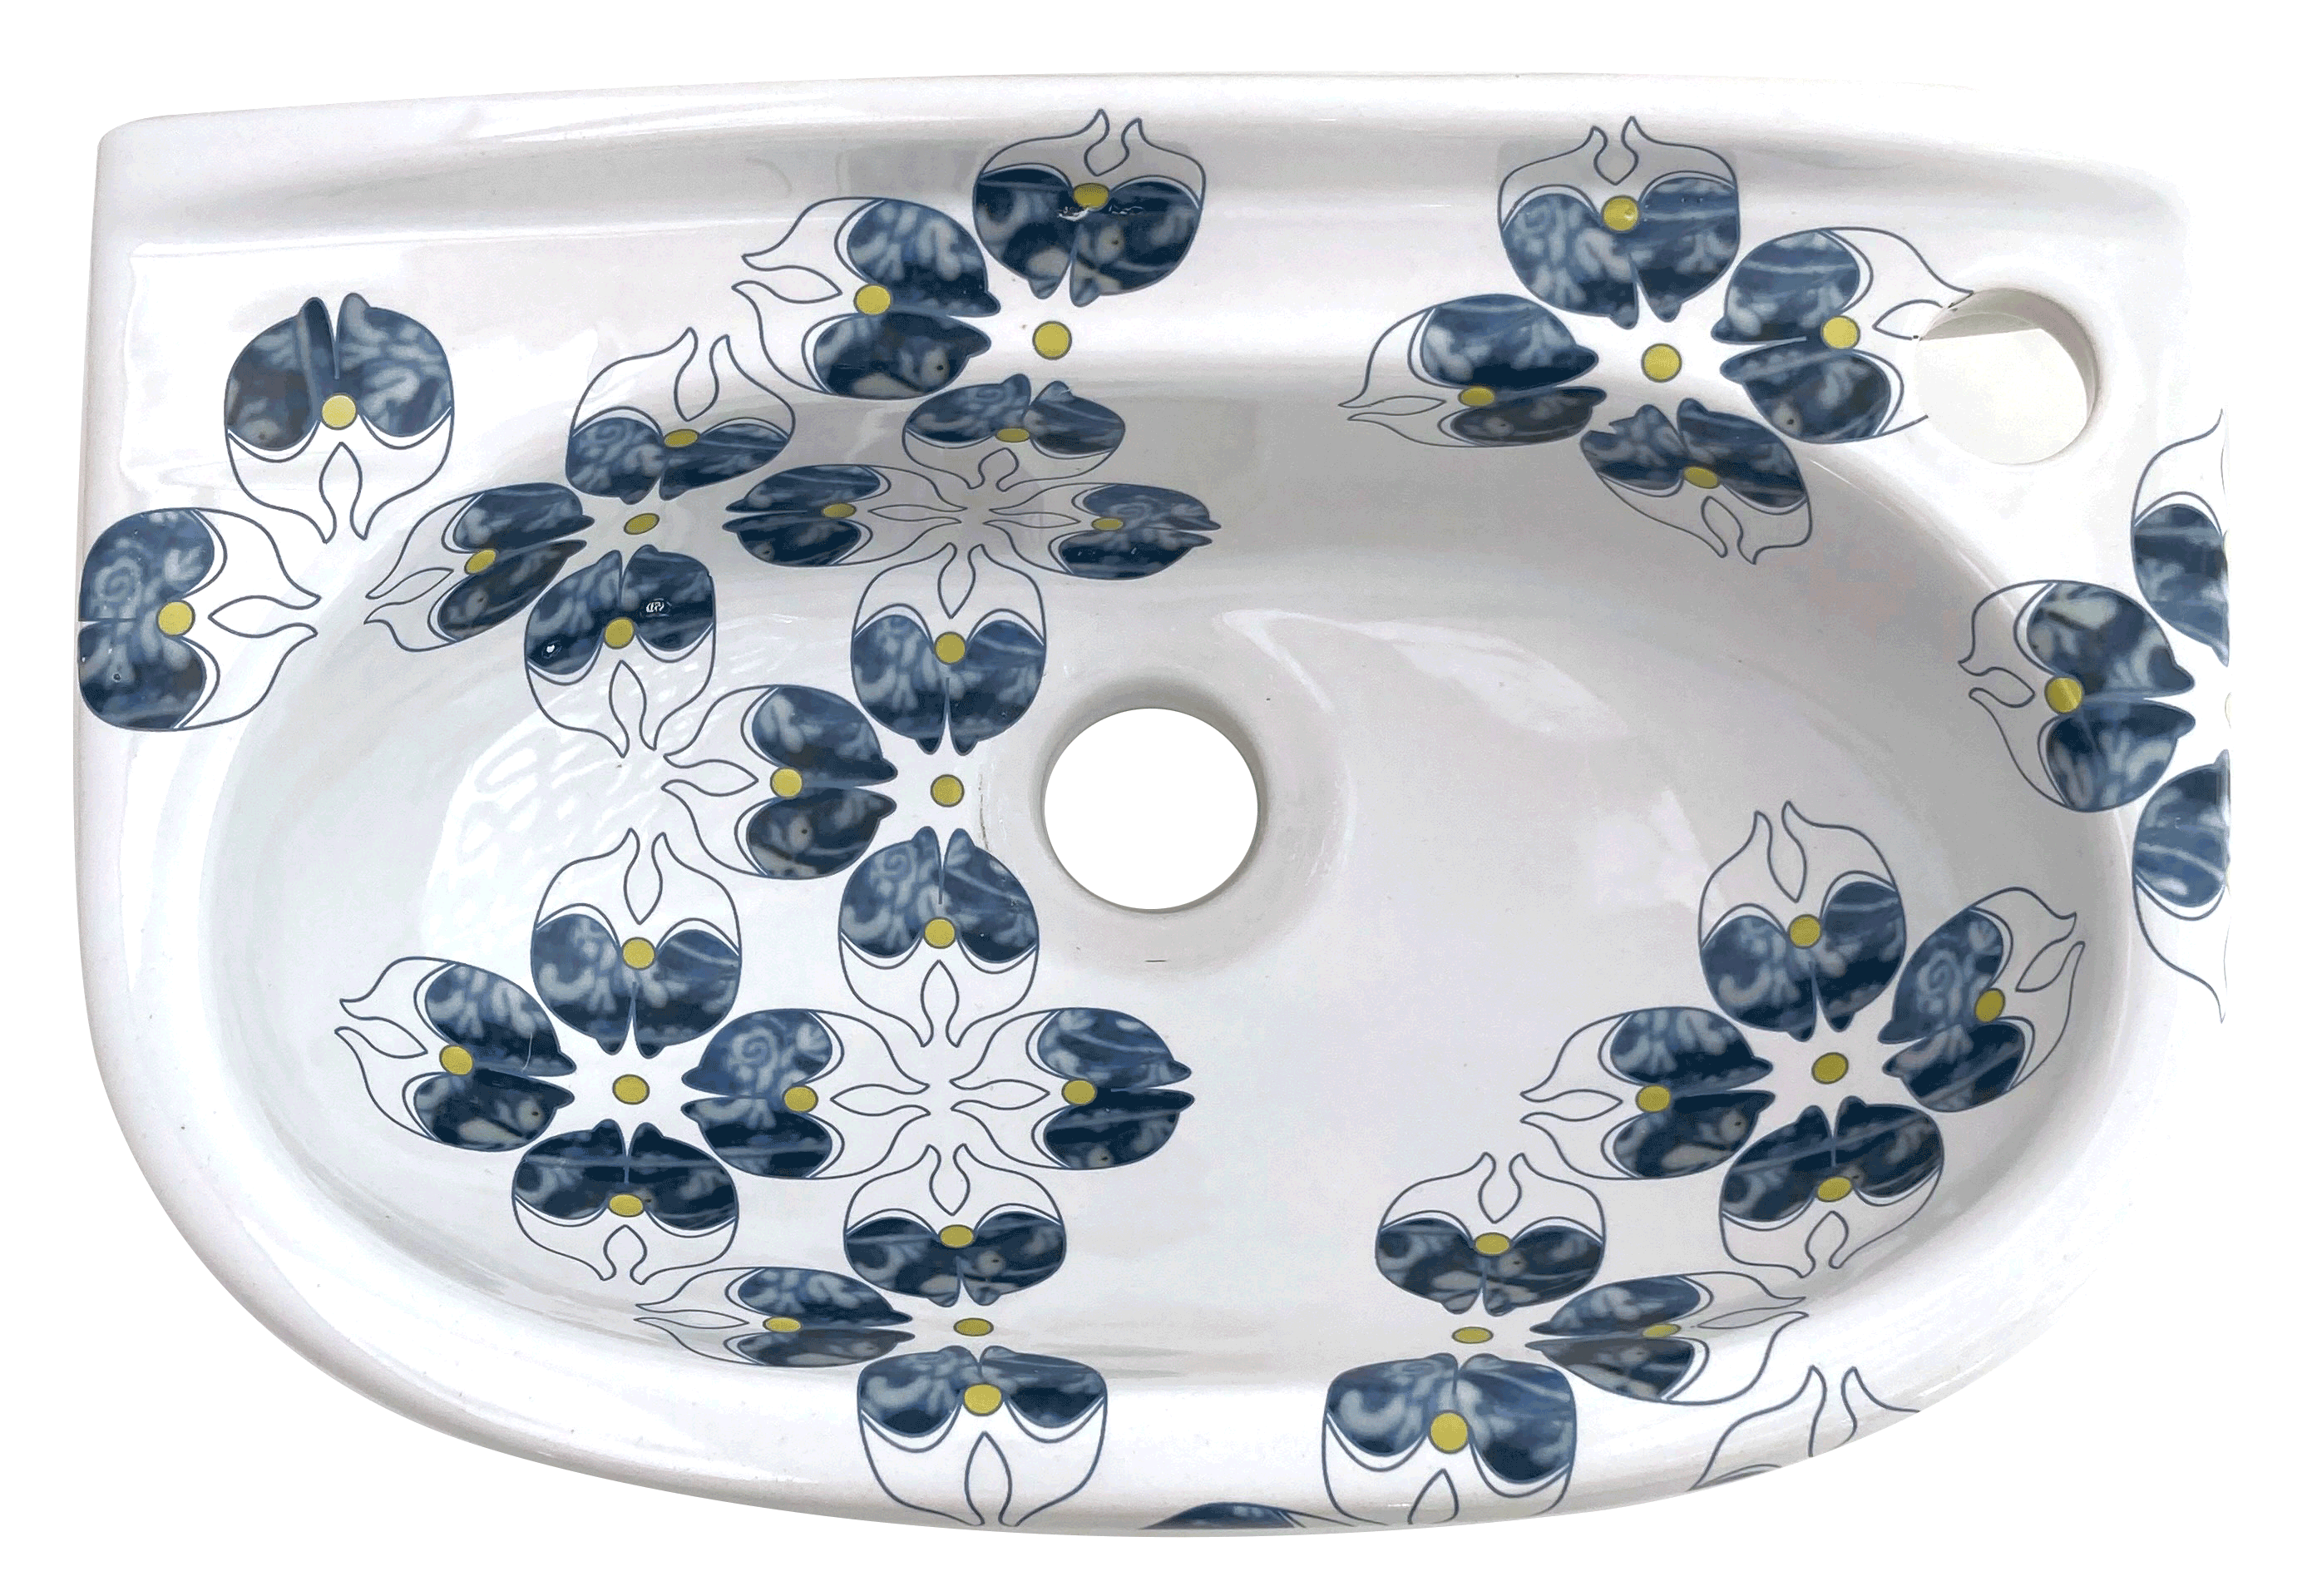 Design toiletfontein met grafisch patroon in blauwe en gele lijntekeningen